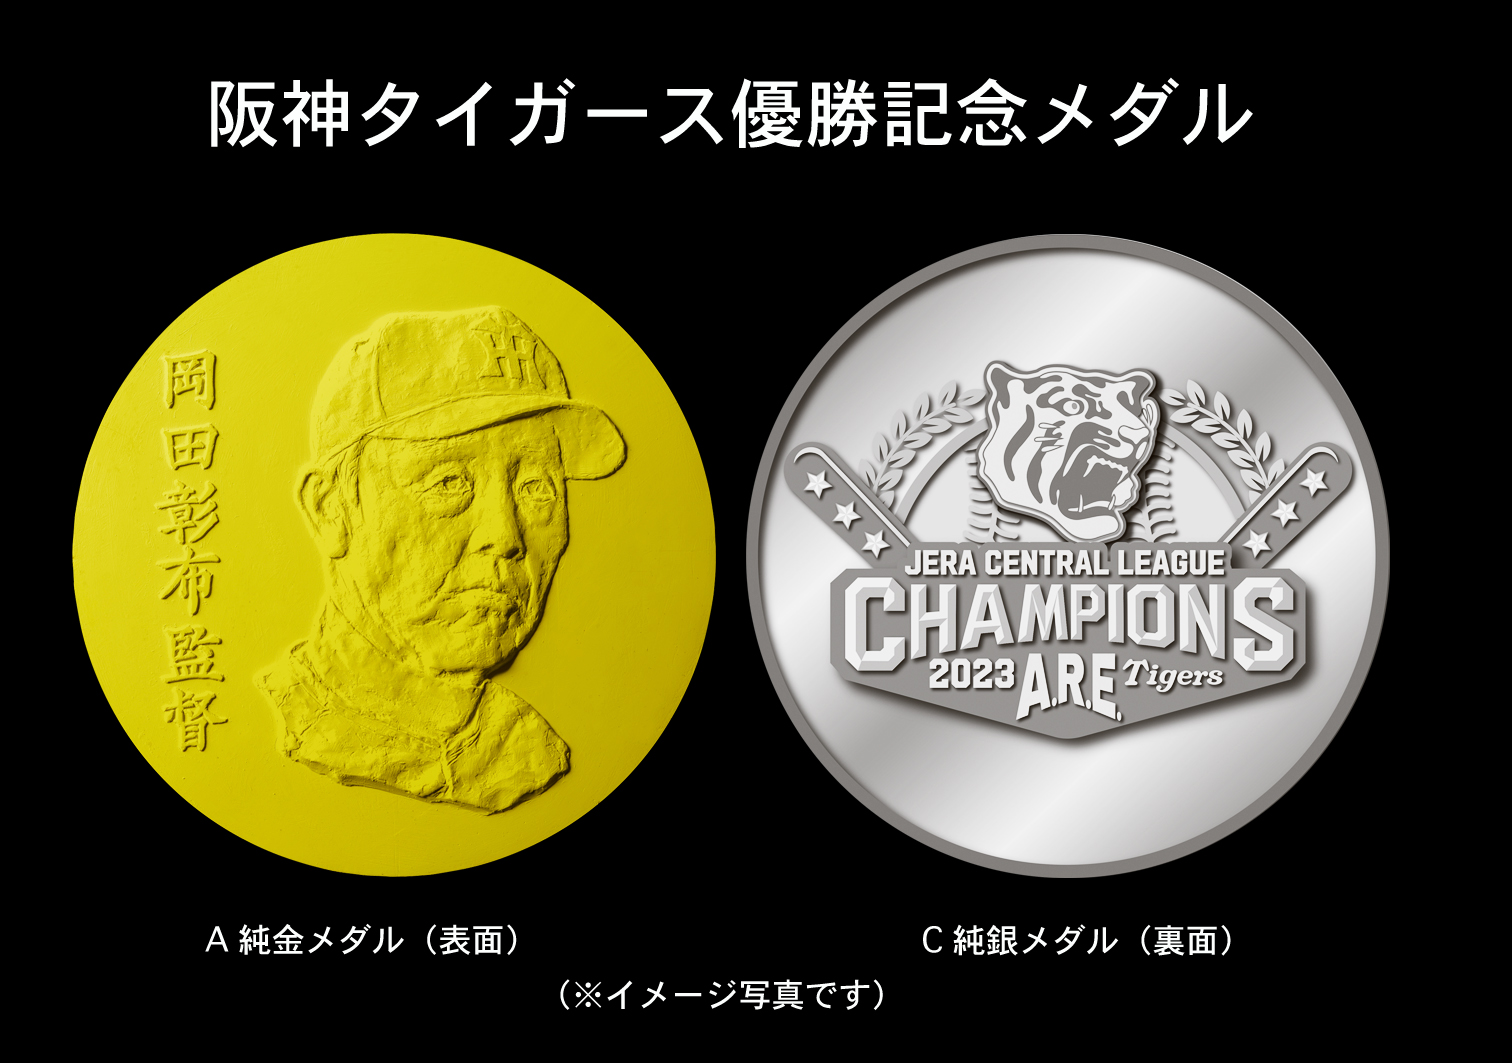 阪神タイガース2003 優勝記念メダル 純金製 純銀製 - 旧貨幣/金貨/銀貨 